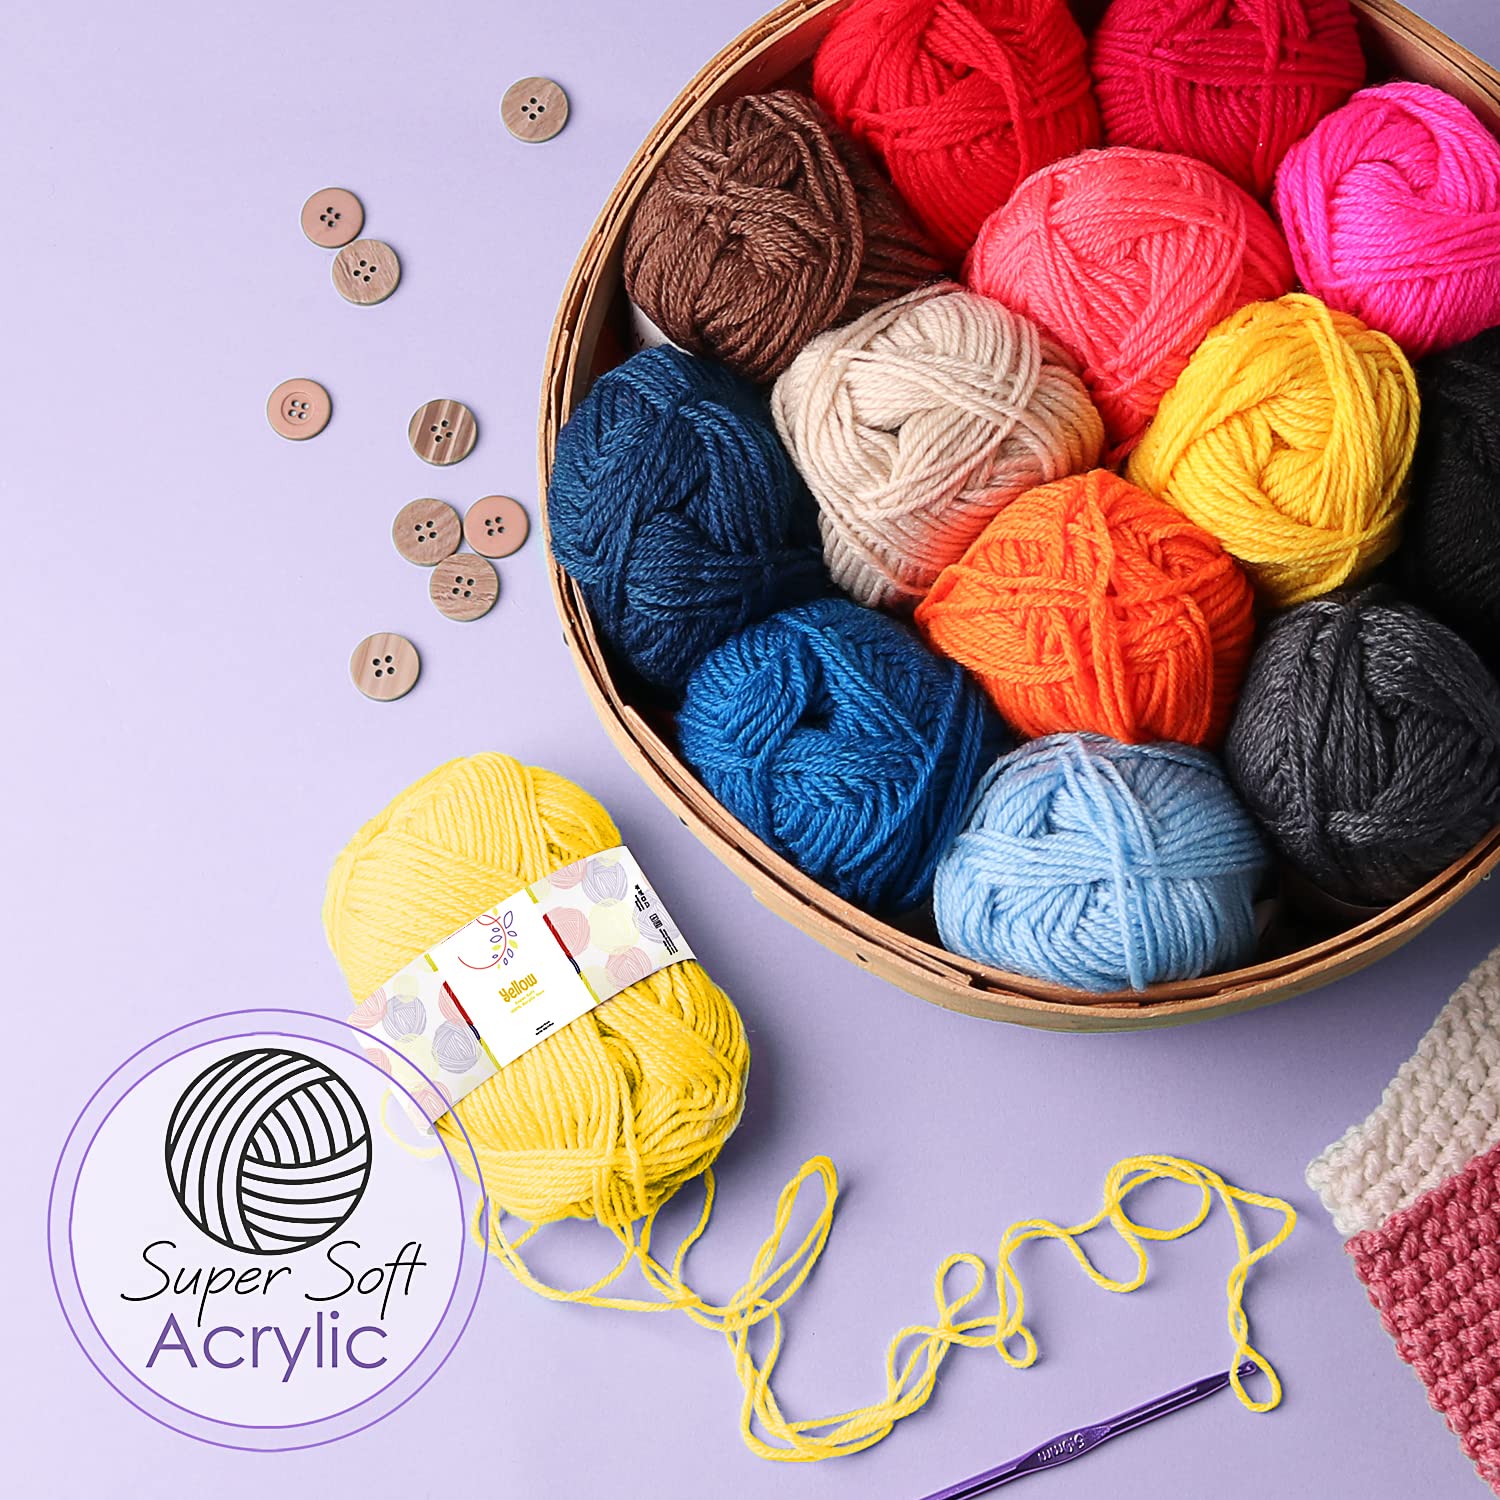 Crochet Kit for Beginners Adults – Beginner Crochet Kit for Adults and Kids, Learn to Crochet Kits for Adults Beginner and Professionals – 73 Piece Crochet Set with Crochet Yarn and Crochet Hook Set